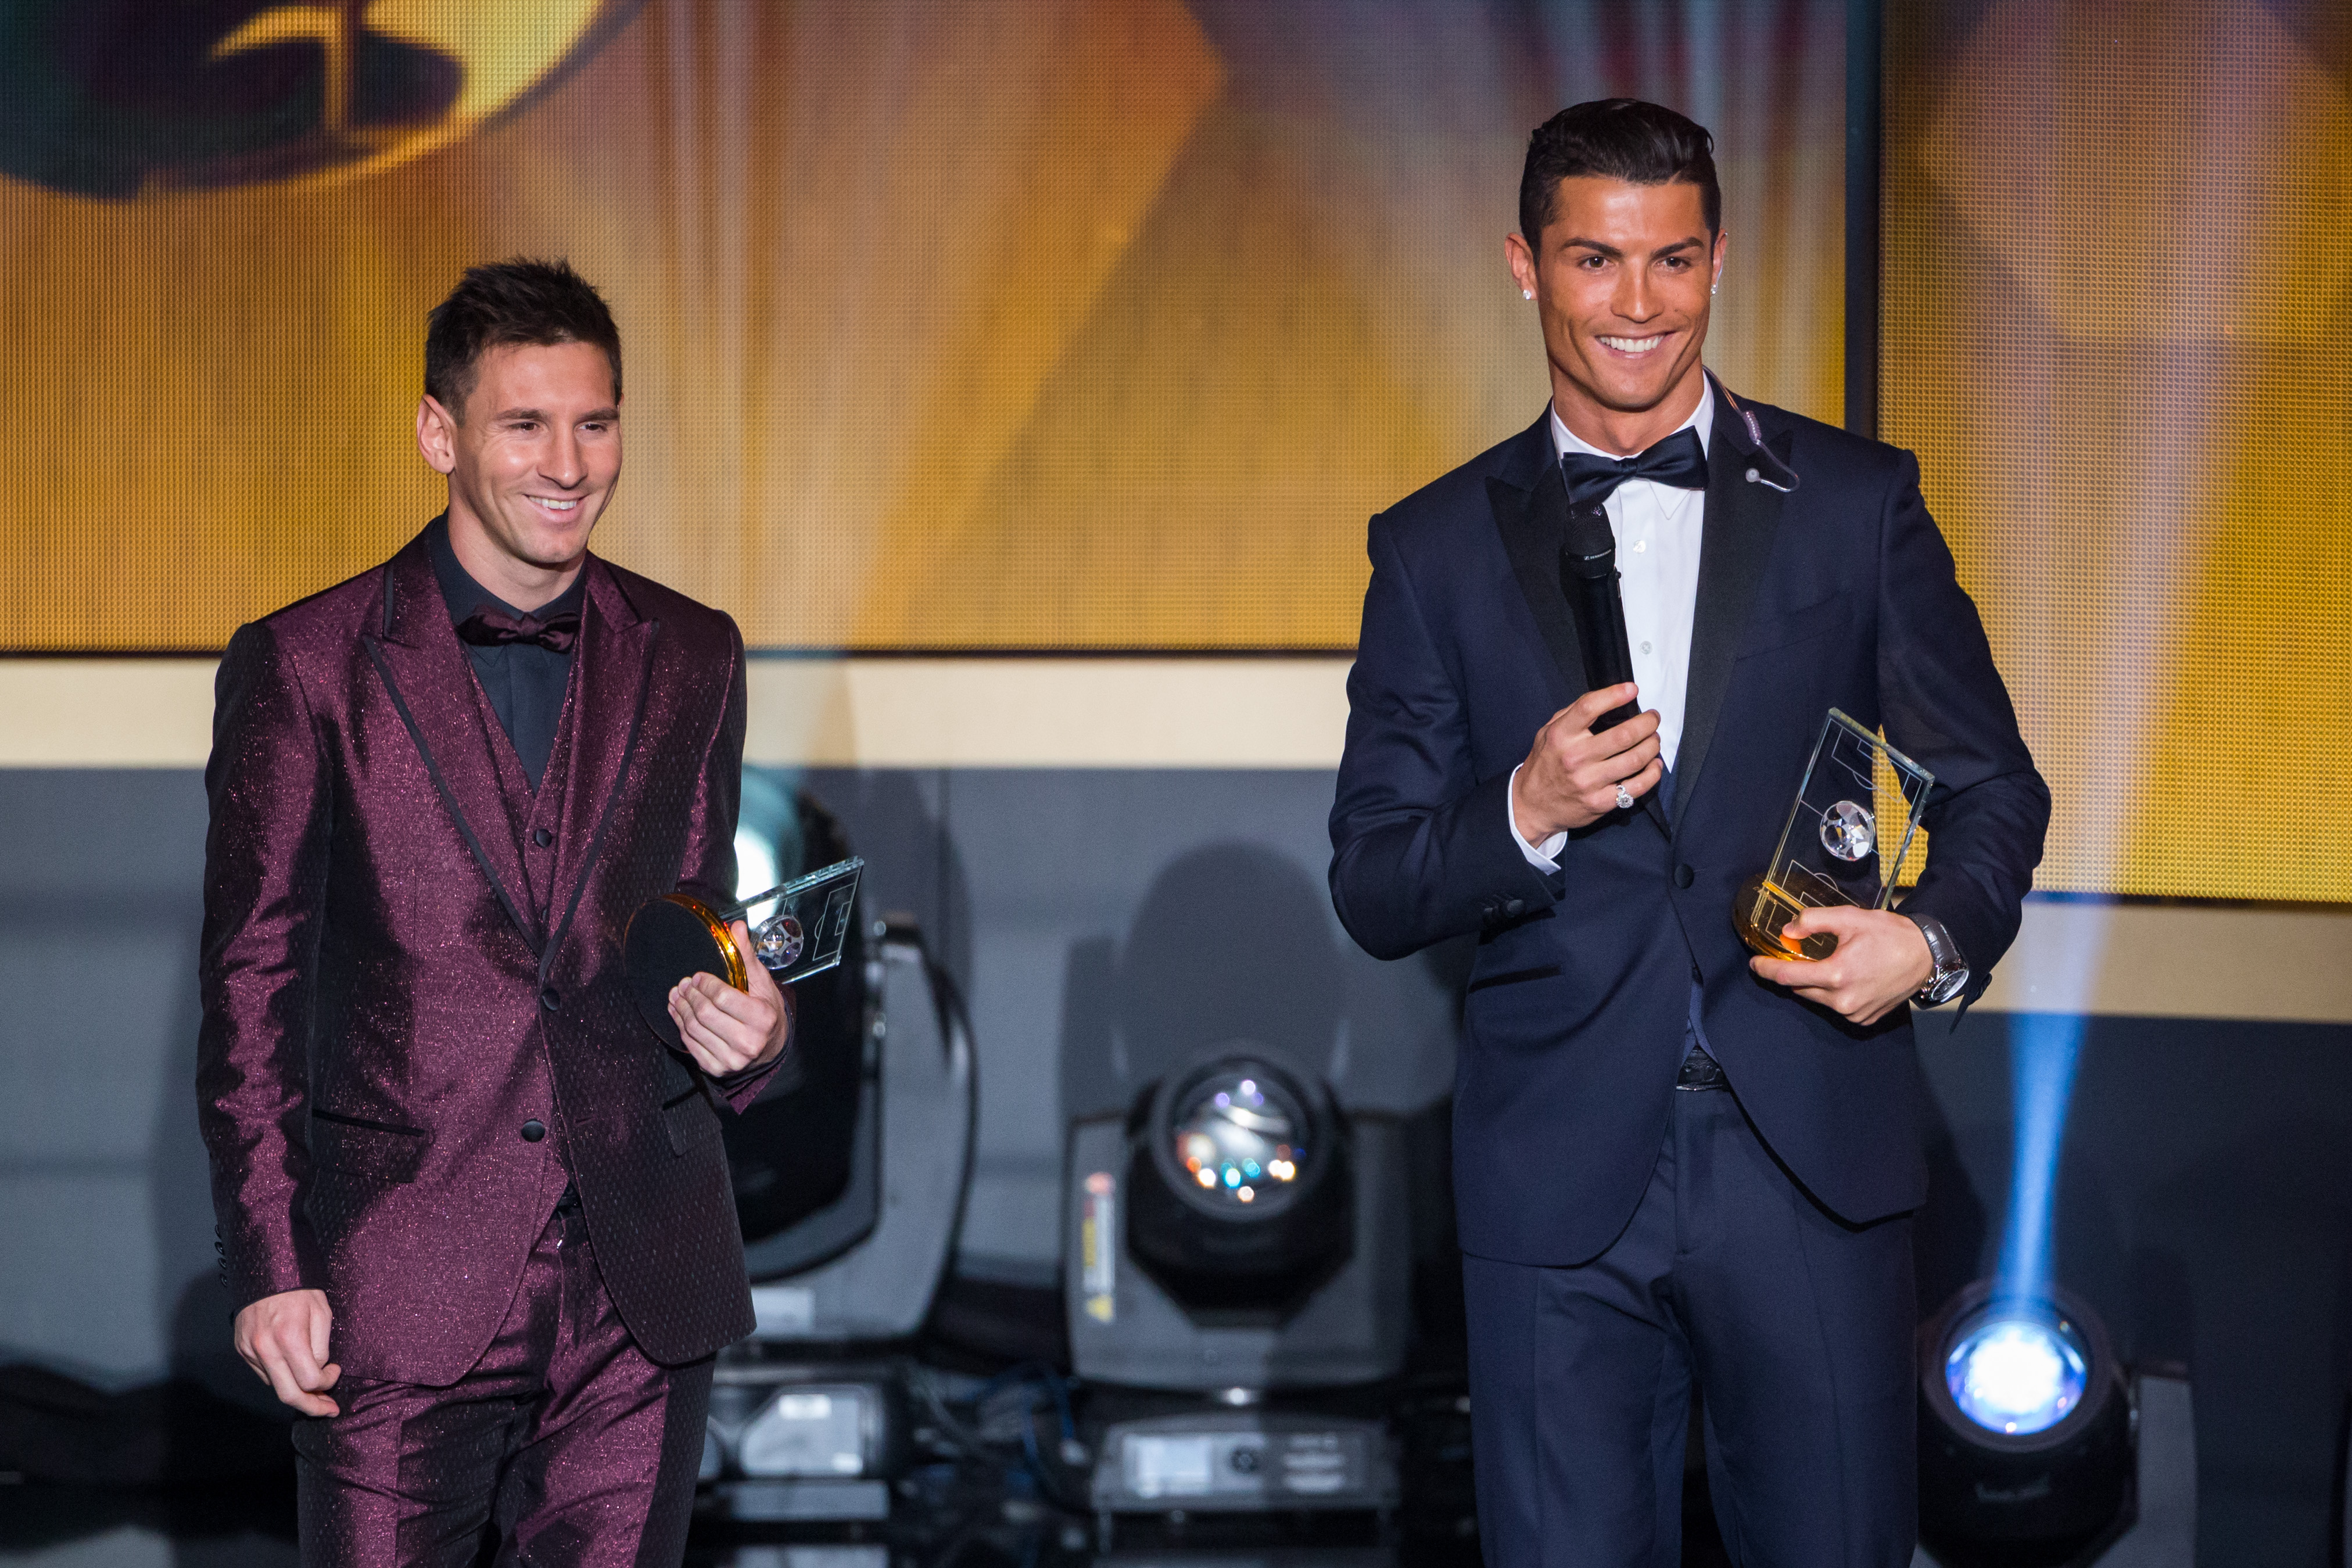 Messi vence Cristiano Ronaldo em pesquisa sobre preferência dos fãs